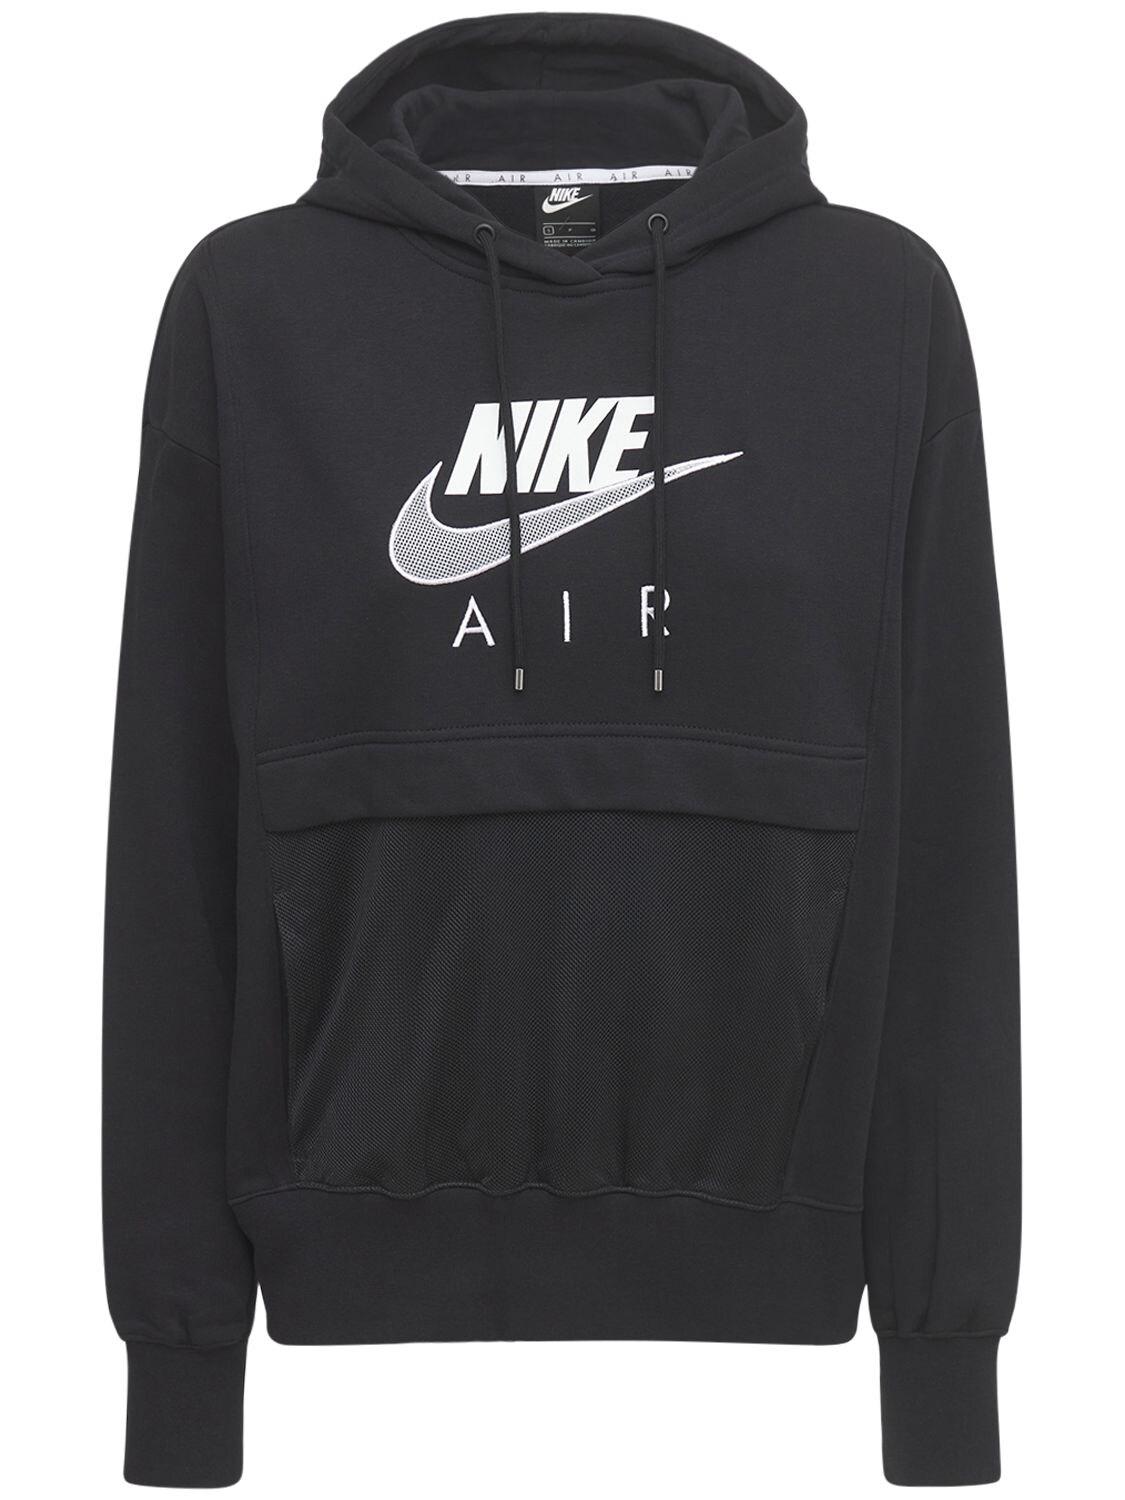 Nike "air" Sweatshirt Hoodie in Black | Lyst Australia